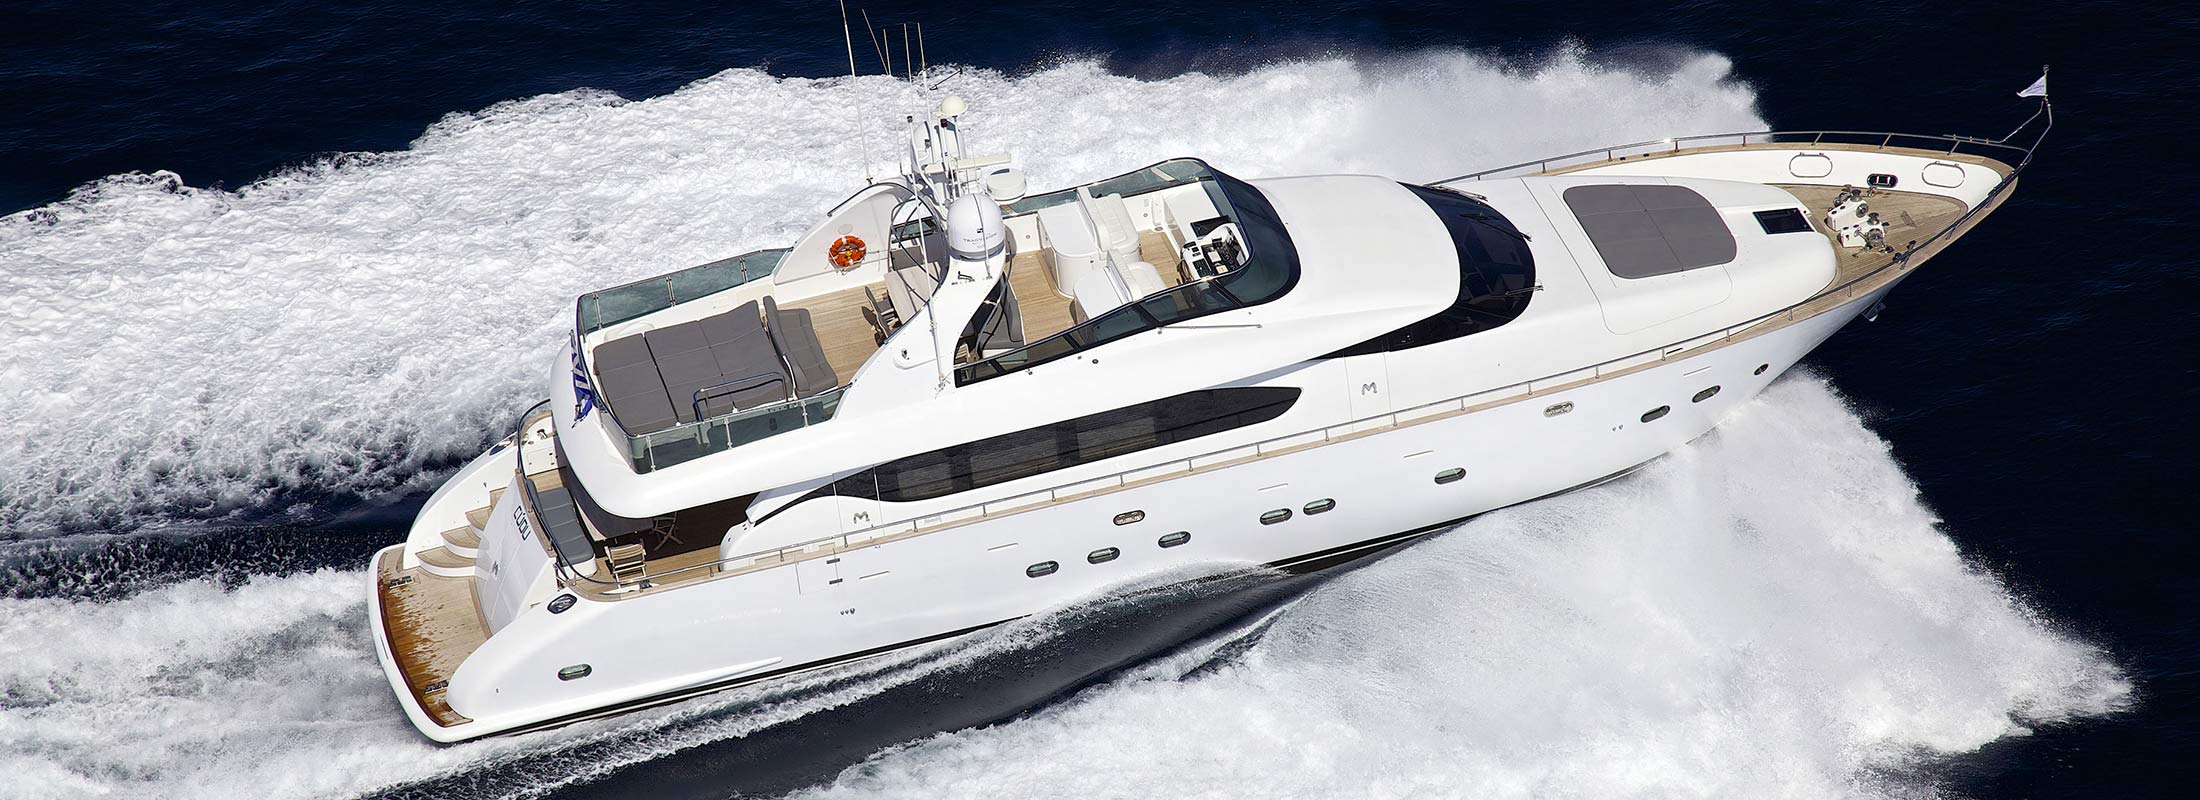 Cudu Motor Yacht for Charter Mediterranean slider 2